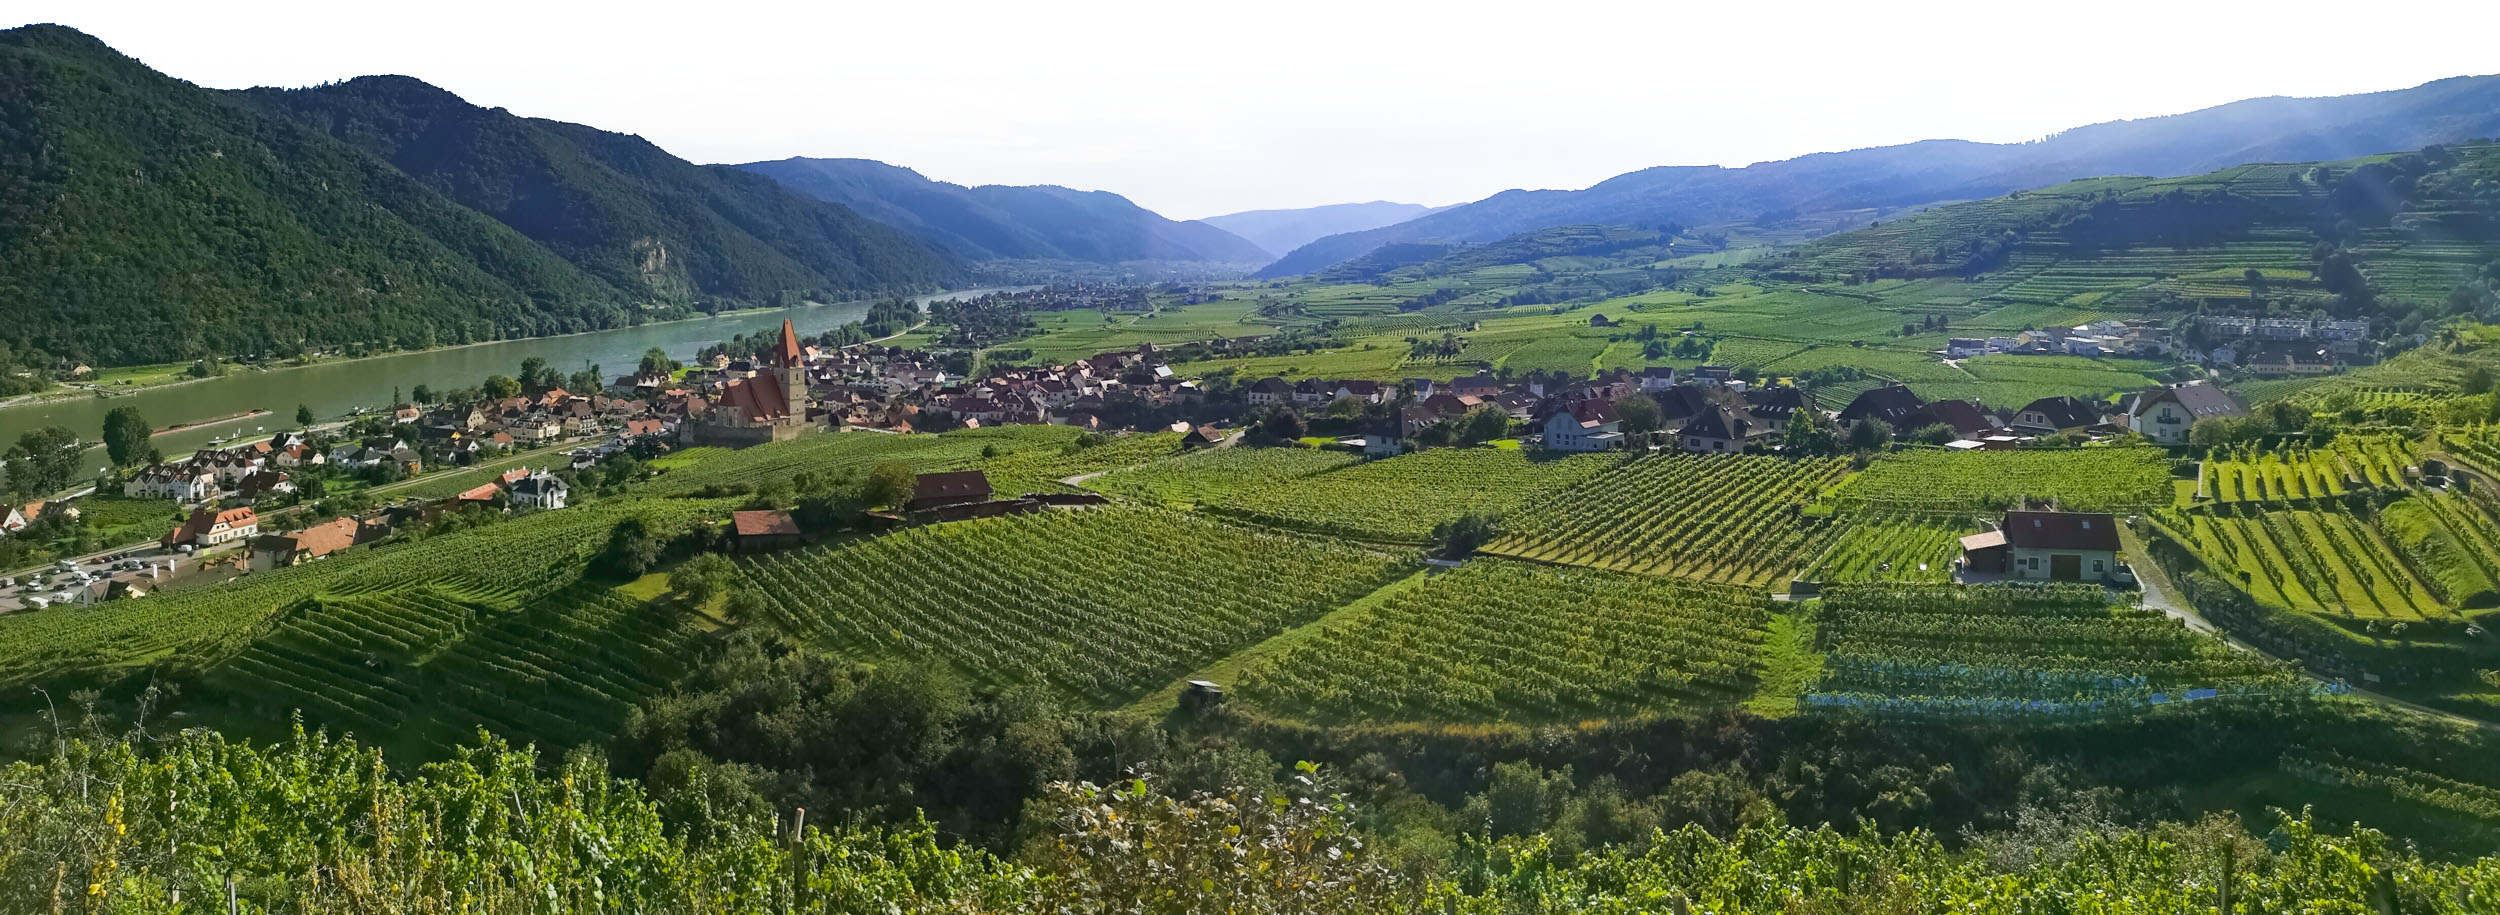 Weissenkirchen surrounded by vineyards in Wachau, Lower Austria